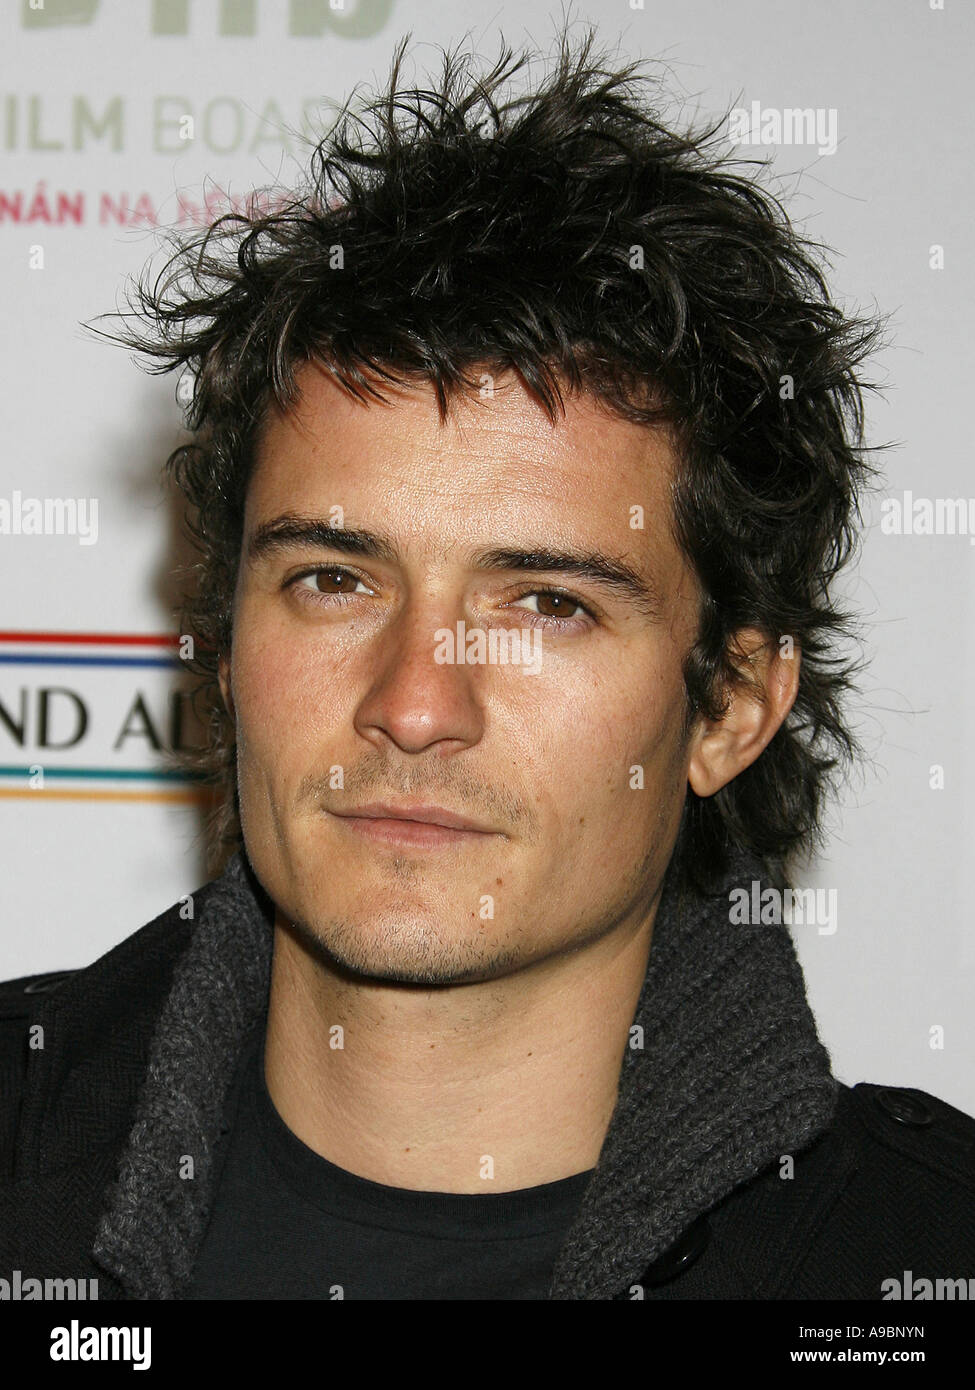 ORLANDO BLOOM - attore inglese nel 2007 Foto Stock